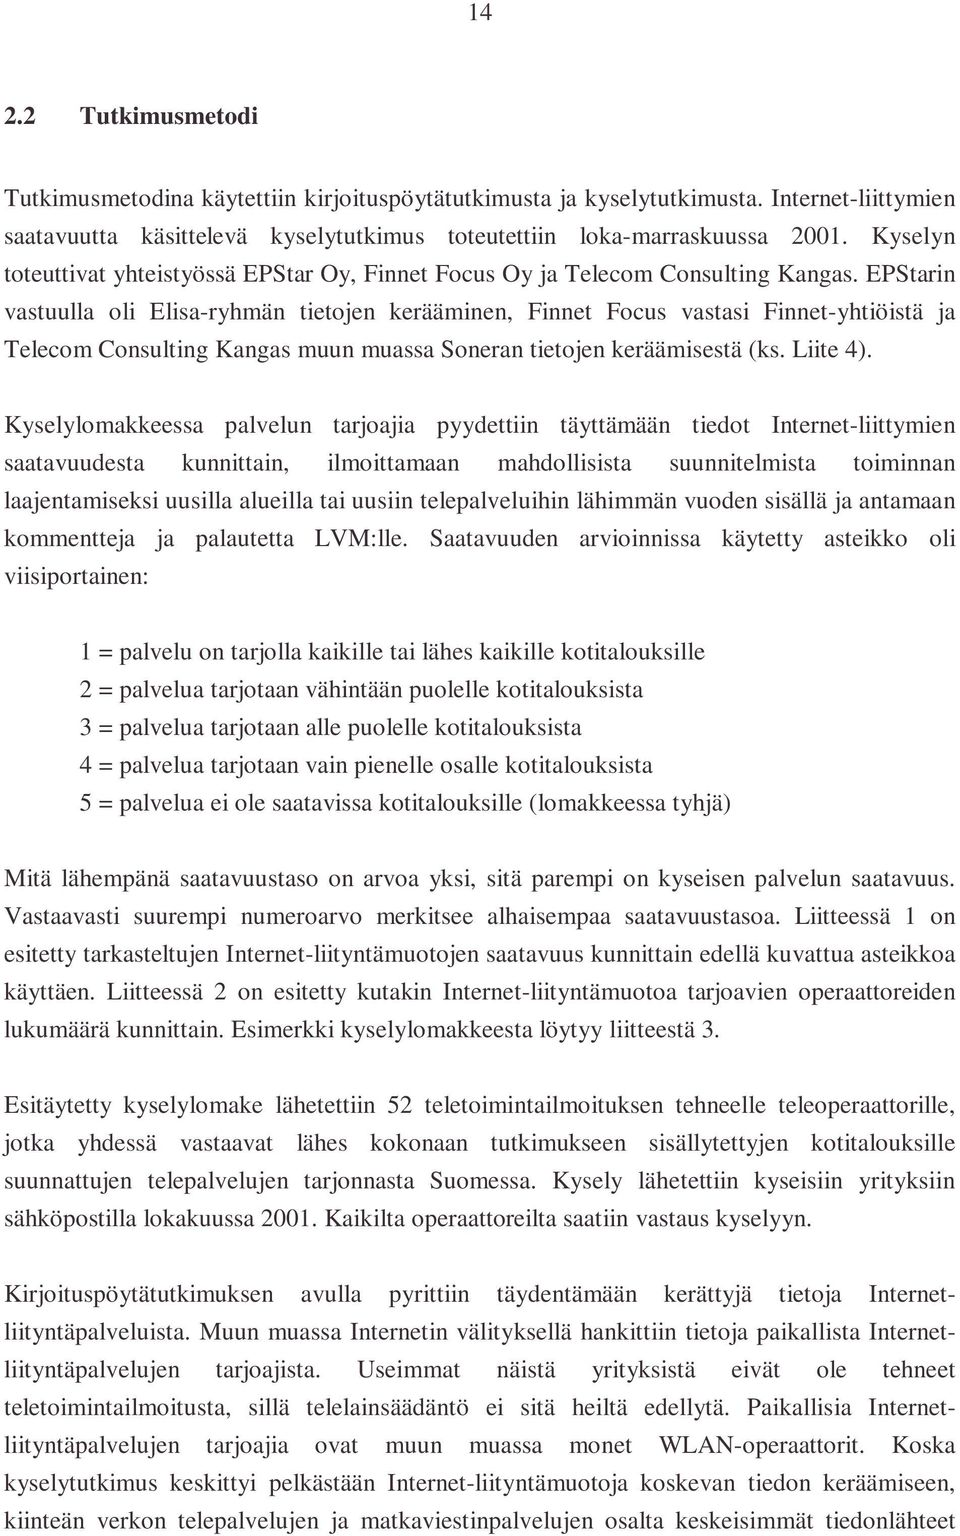 EPStarin vastuulla oli Elisa-ryhmän tietojen kerääminen, Finnet Focus vastasi Finnet-yhtiöistä ja Telecom Consulting Kangas muun muassa Soneran tietojen keräämisestä (ks. Liite 4).